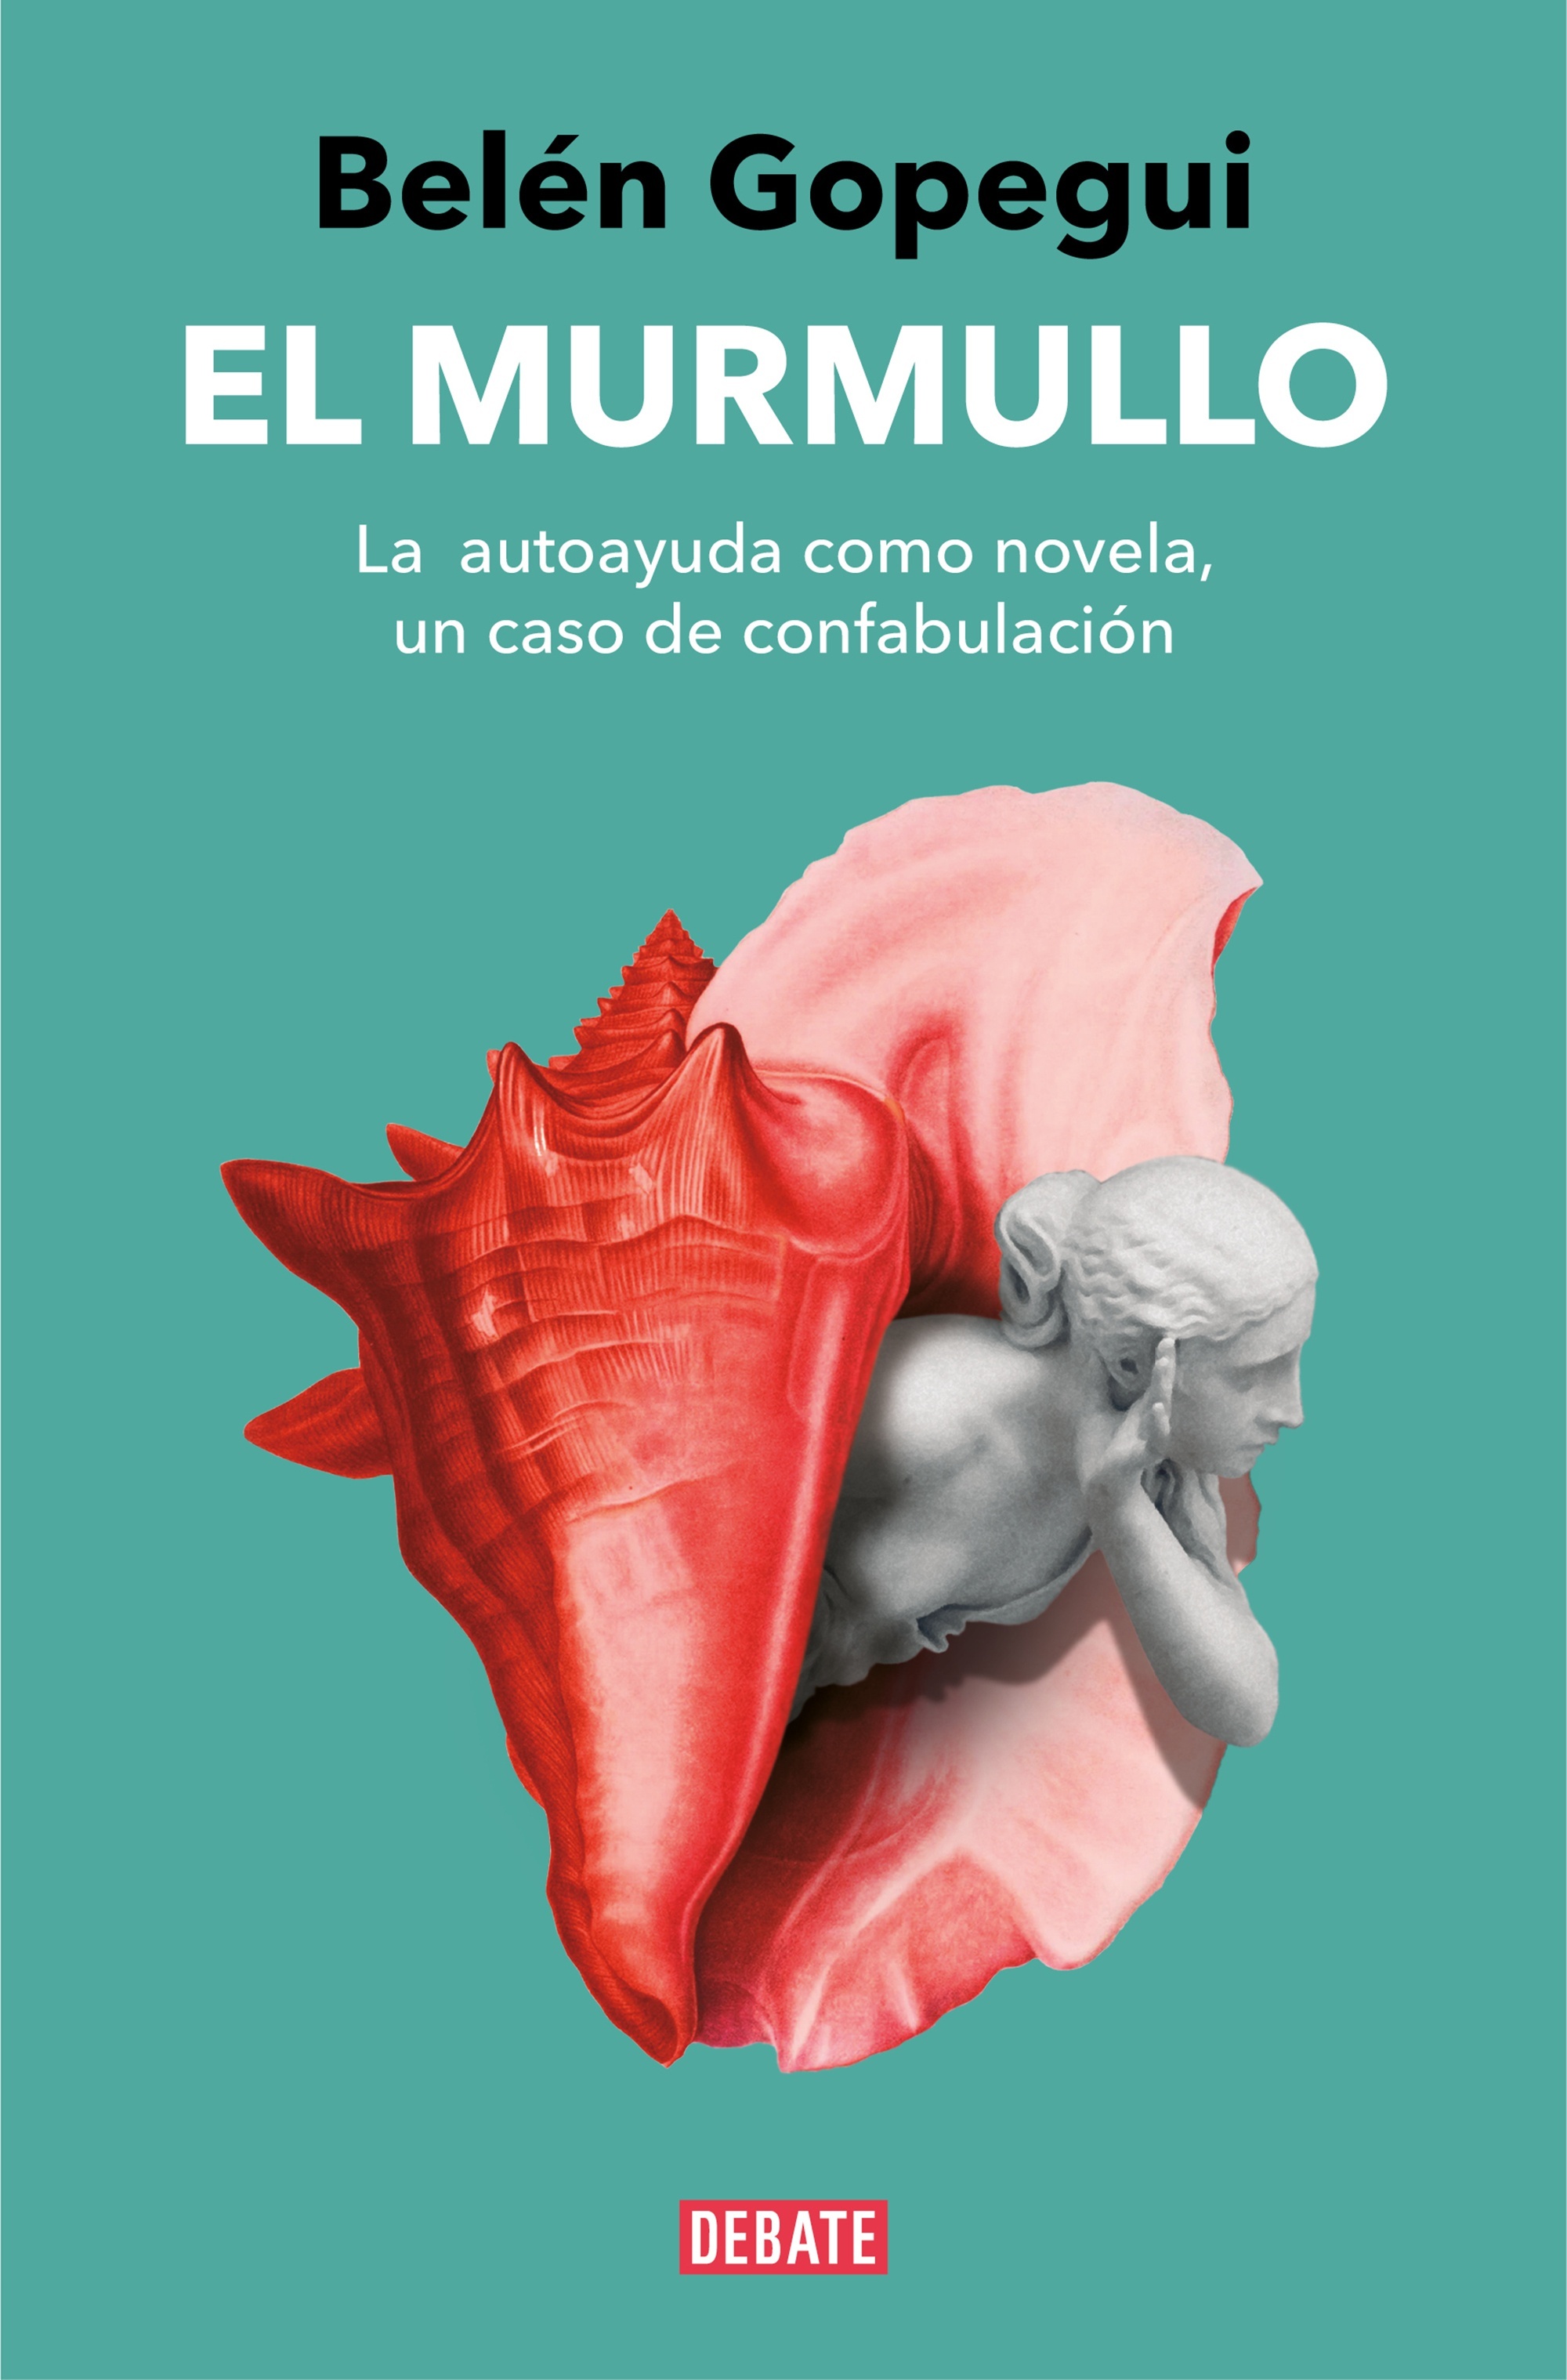 Murmullo, El "La autoayuda como novela, un caso de confabulación". 